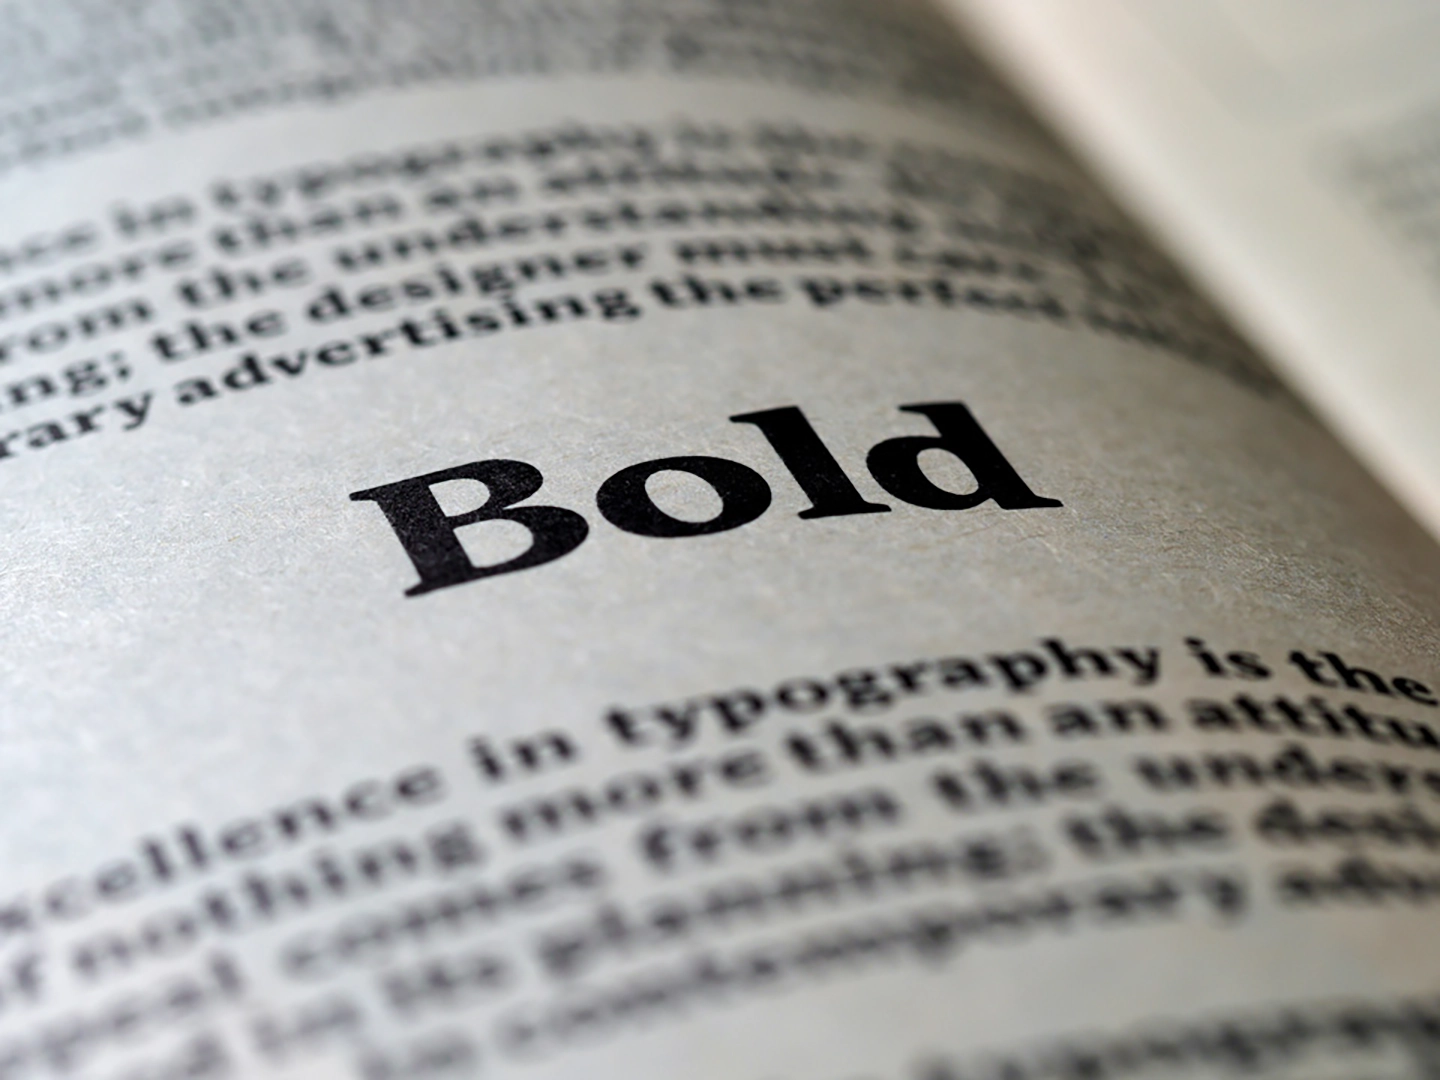 Seitenausschnitt mit dem Wort 'Bold' hervorgehoben in fetter Typografie.